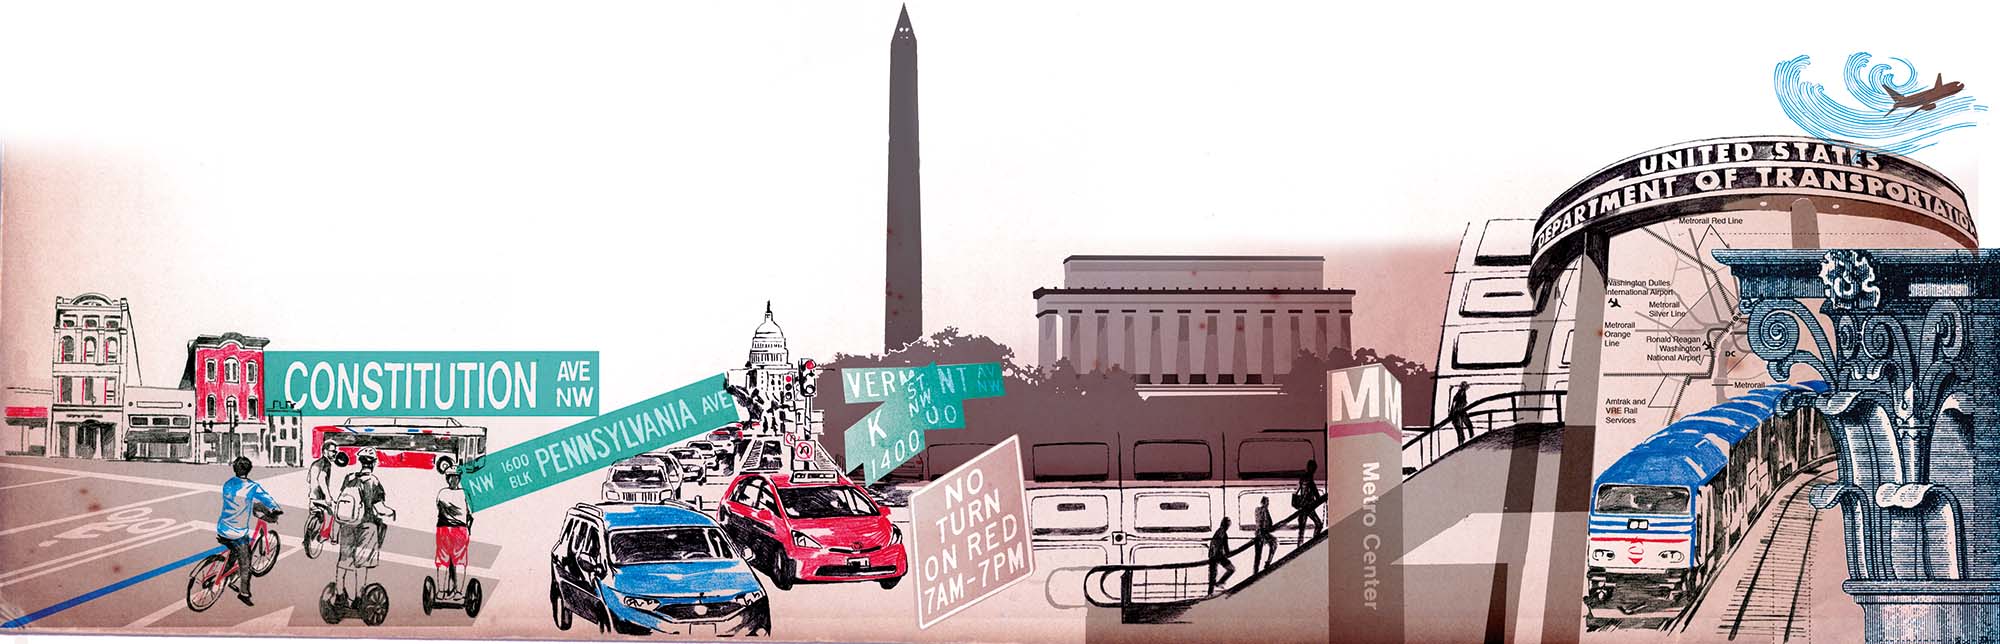 Washington DC montage illustration